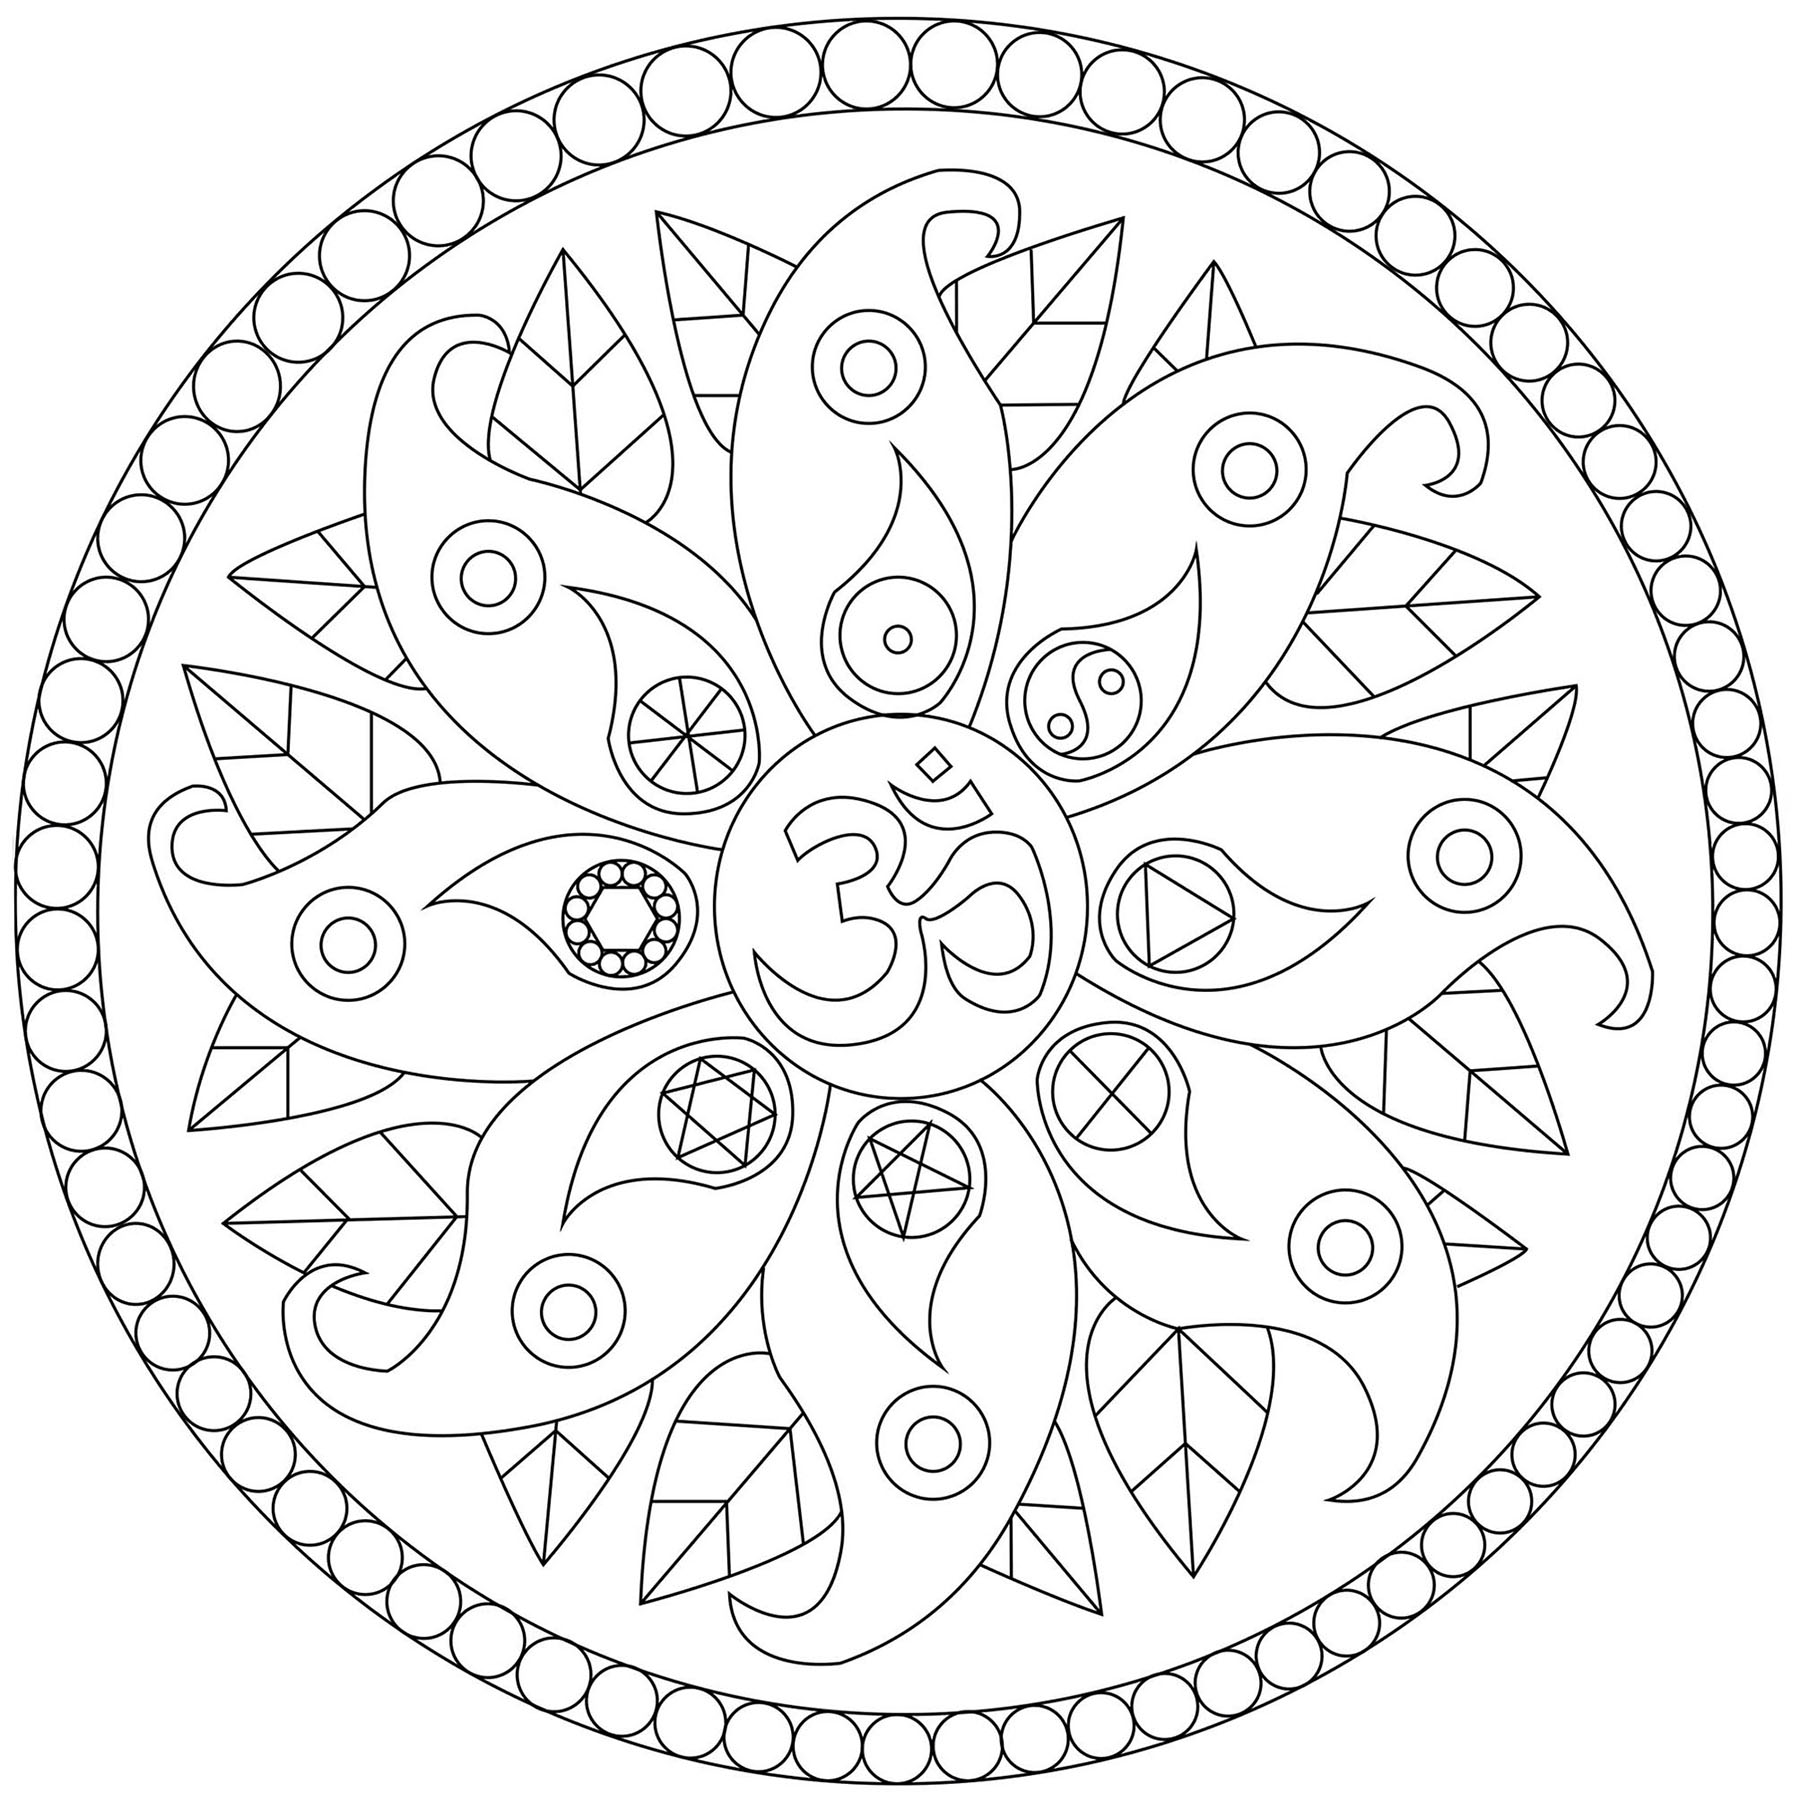 Un Mandala comportant des motifs végétaux et divers symboles comme le Yin & Yang, Artiste : Caillou